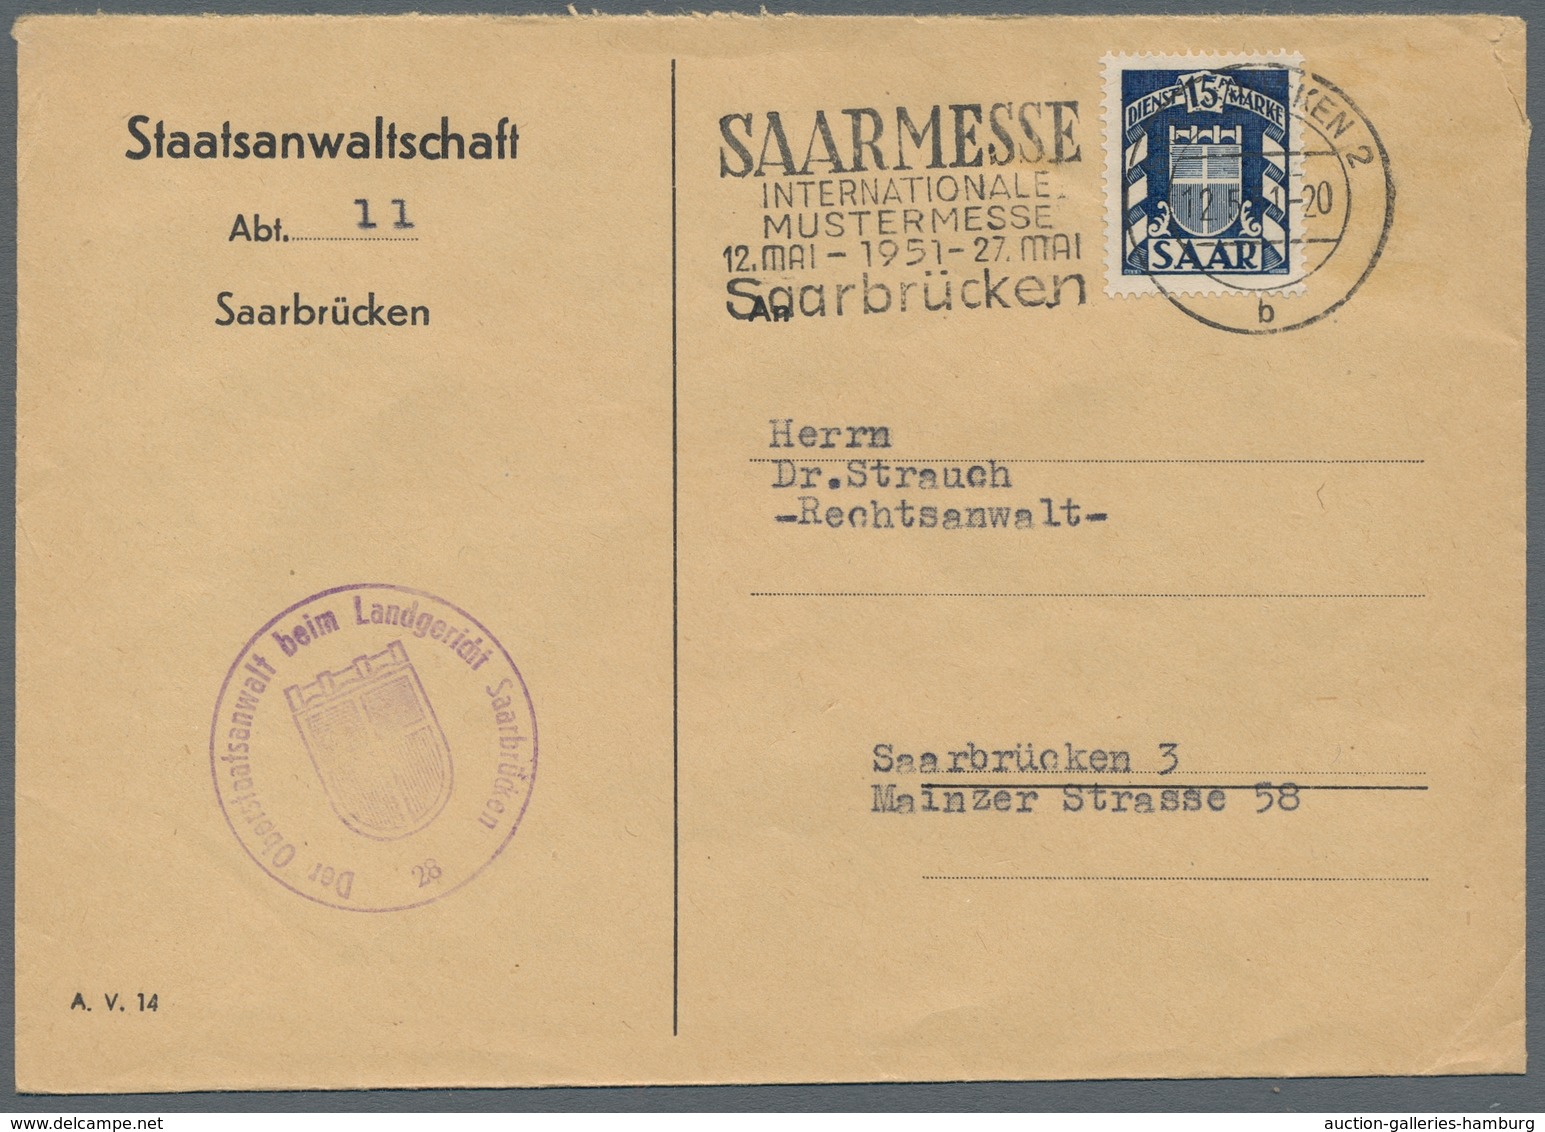 Saarland (1947/56) - Dienstmarken: 1950-53 (ca.), 13 Einzelfrankaturen der 15Fr, saubere Qualität